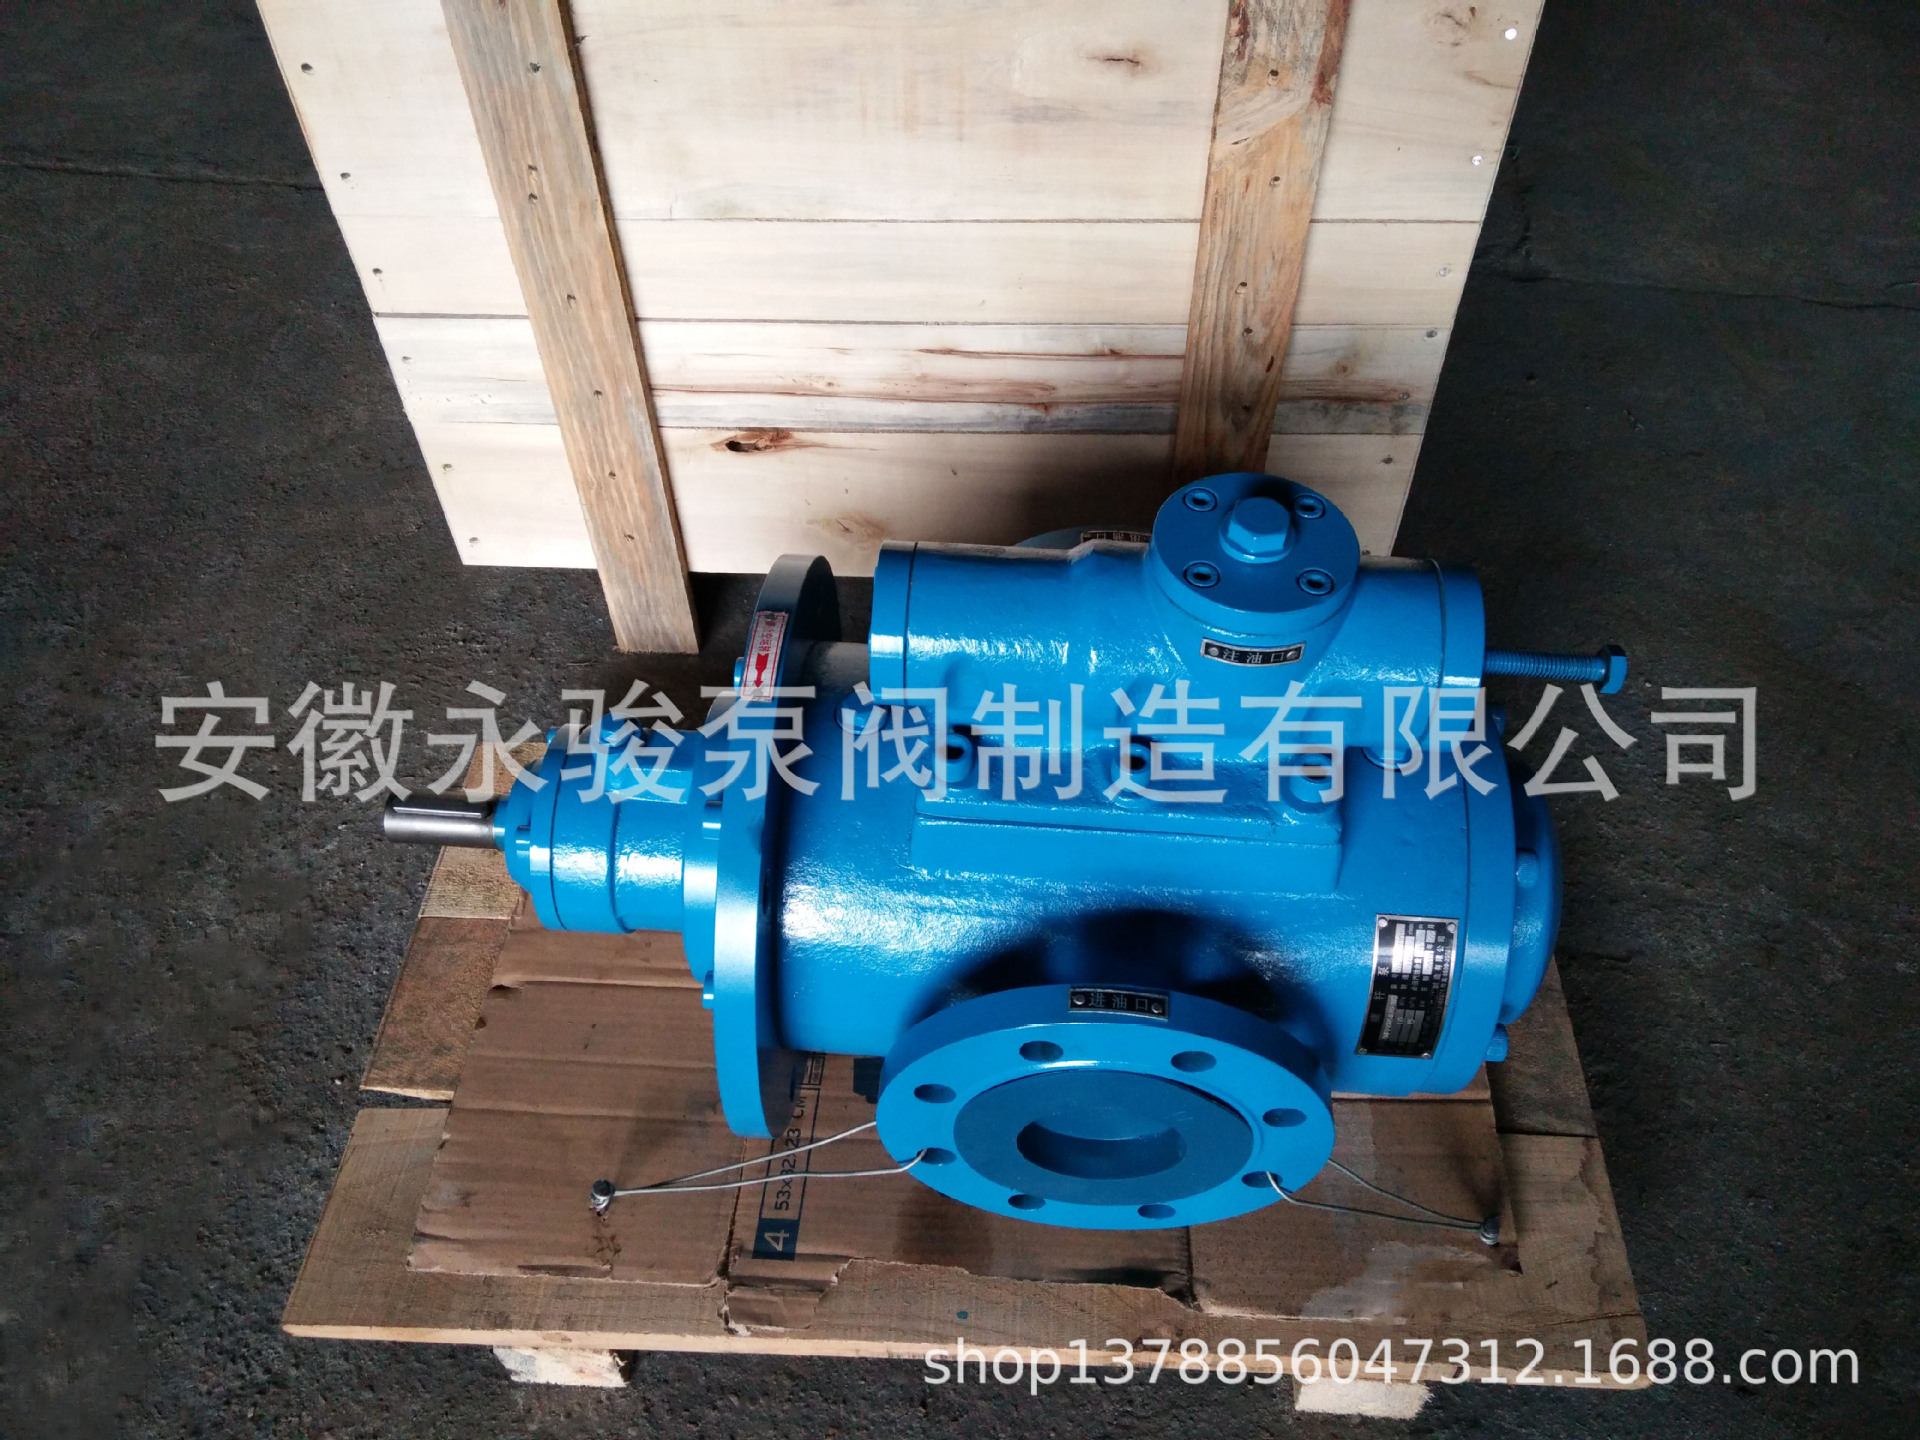 黄山螺杆泵 SNF120-46 法兰式三螺杆泵 液压油泵 稀油泵 安徽永骏